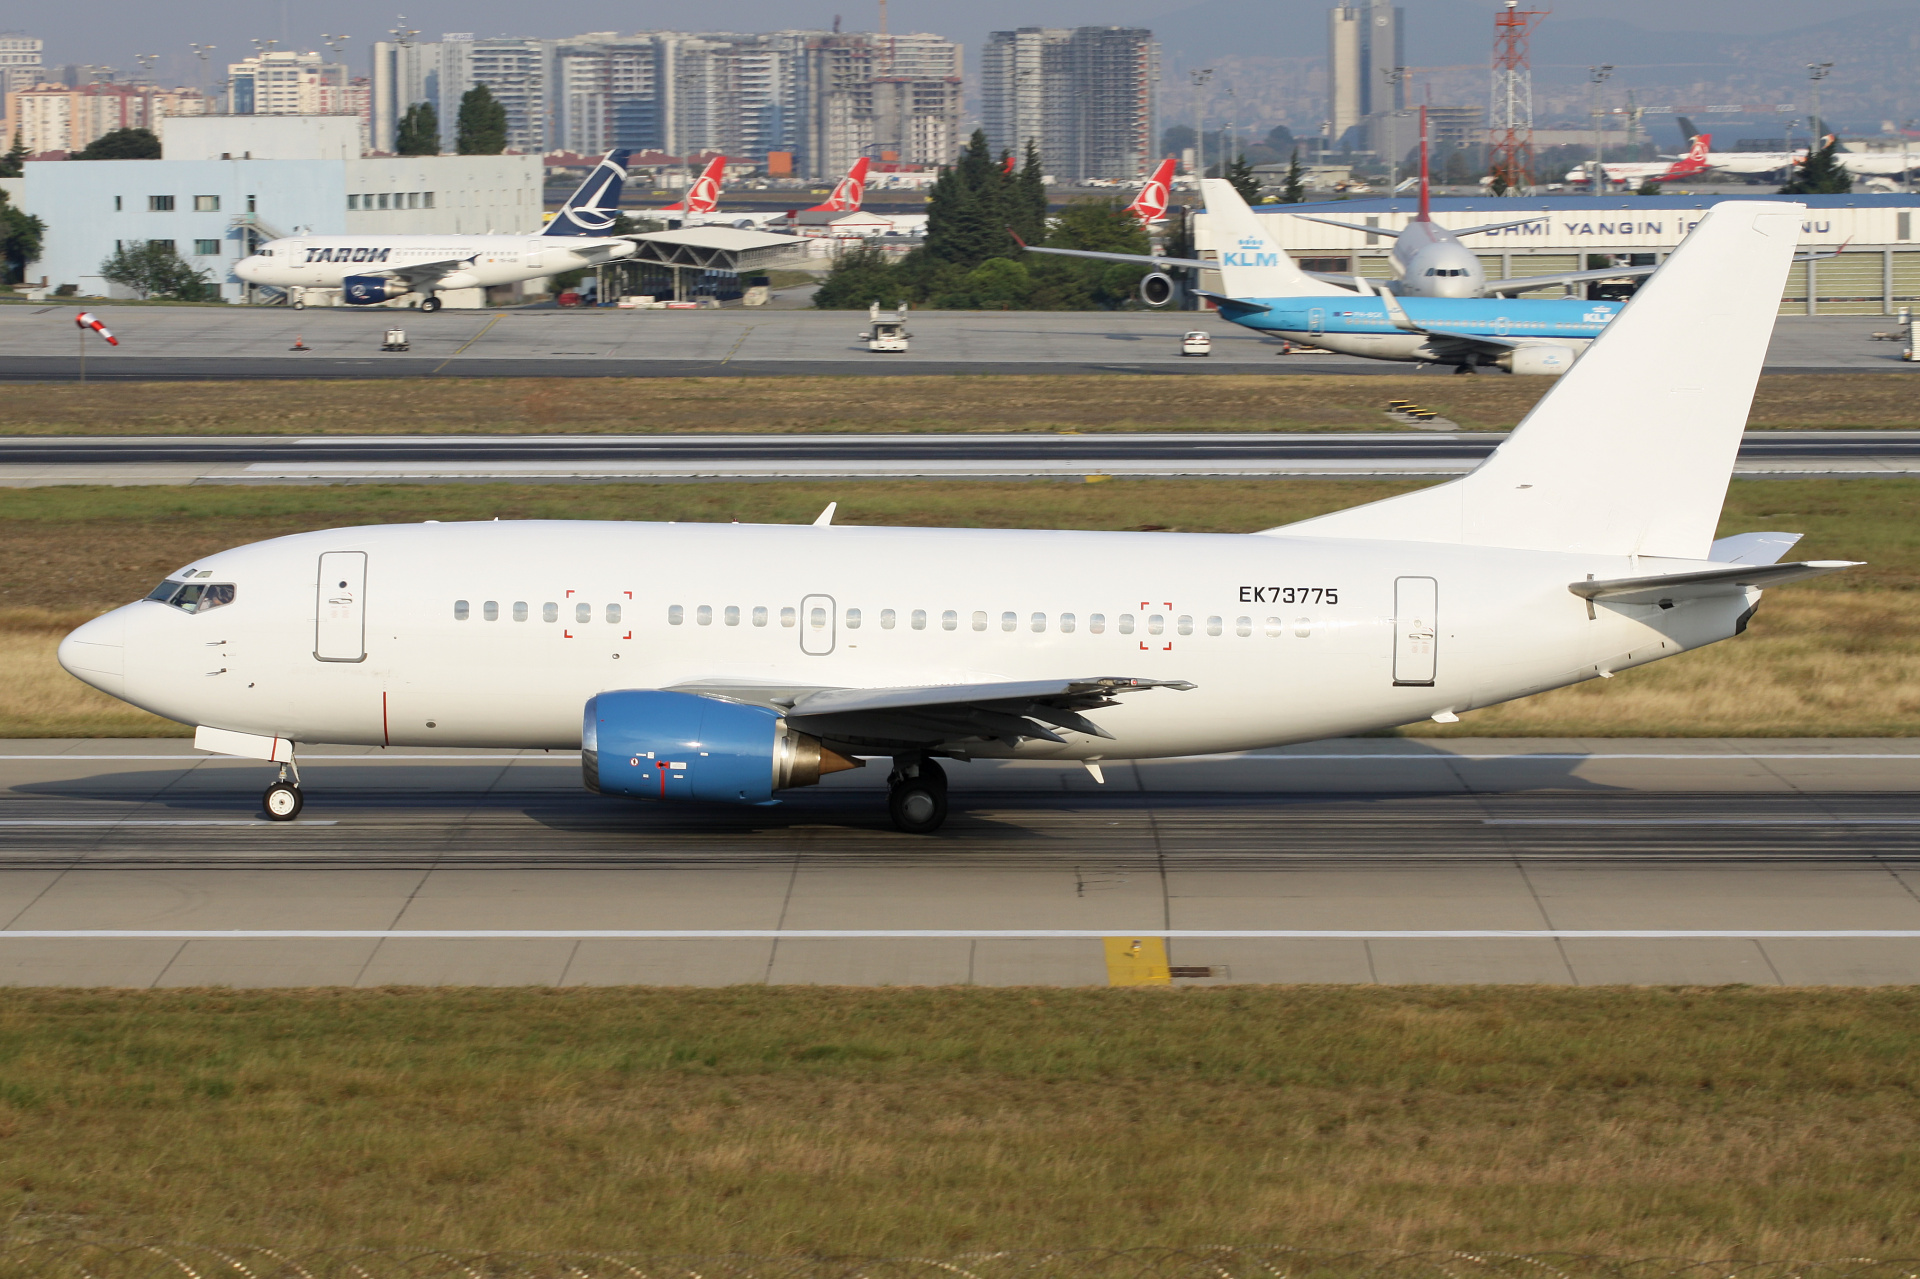 EK73775, Taron Avia (Samoloty » Port Lotniczy im. Atatürka w Stambule » Boeing 737-500)